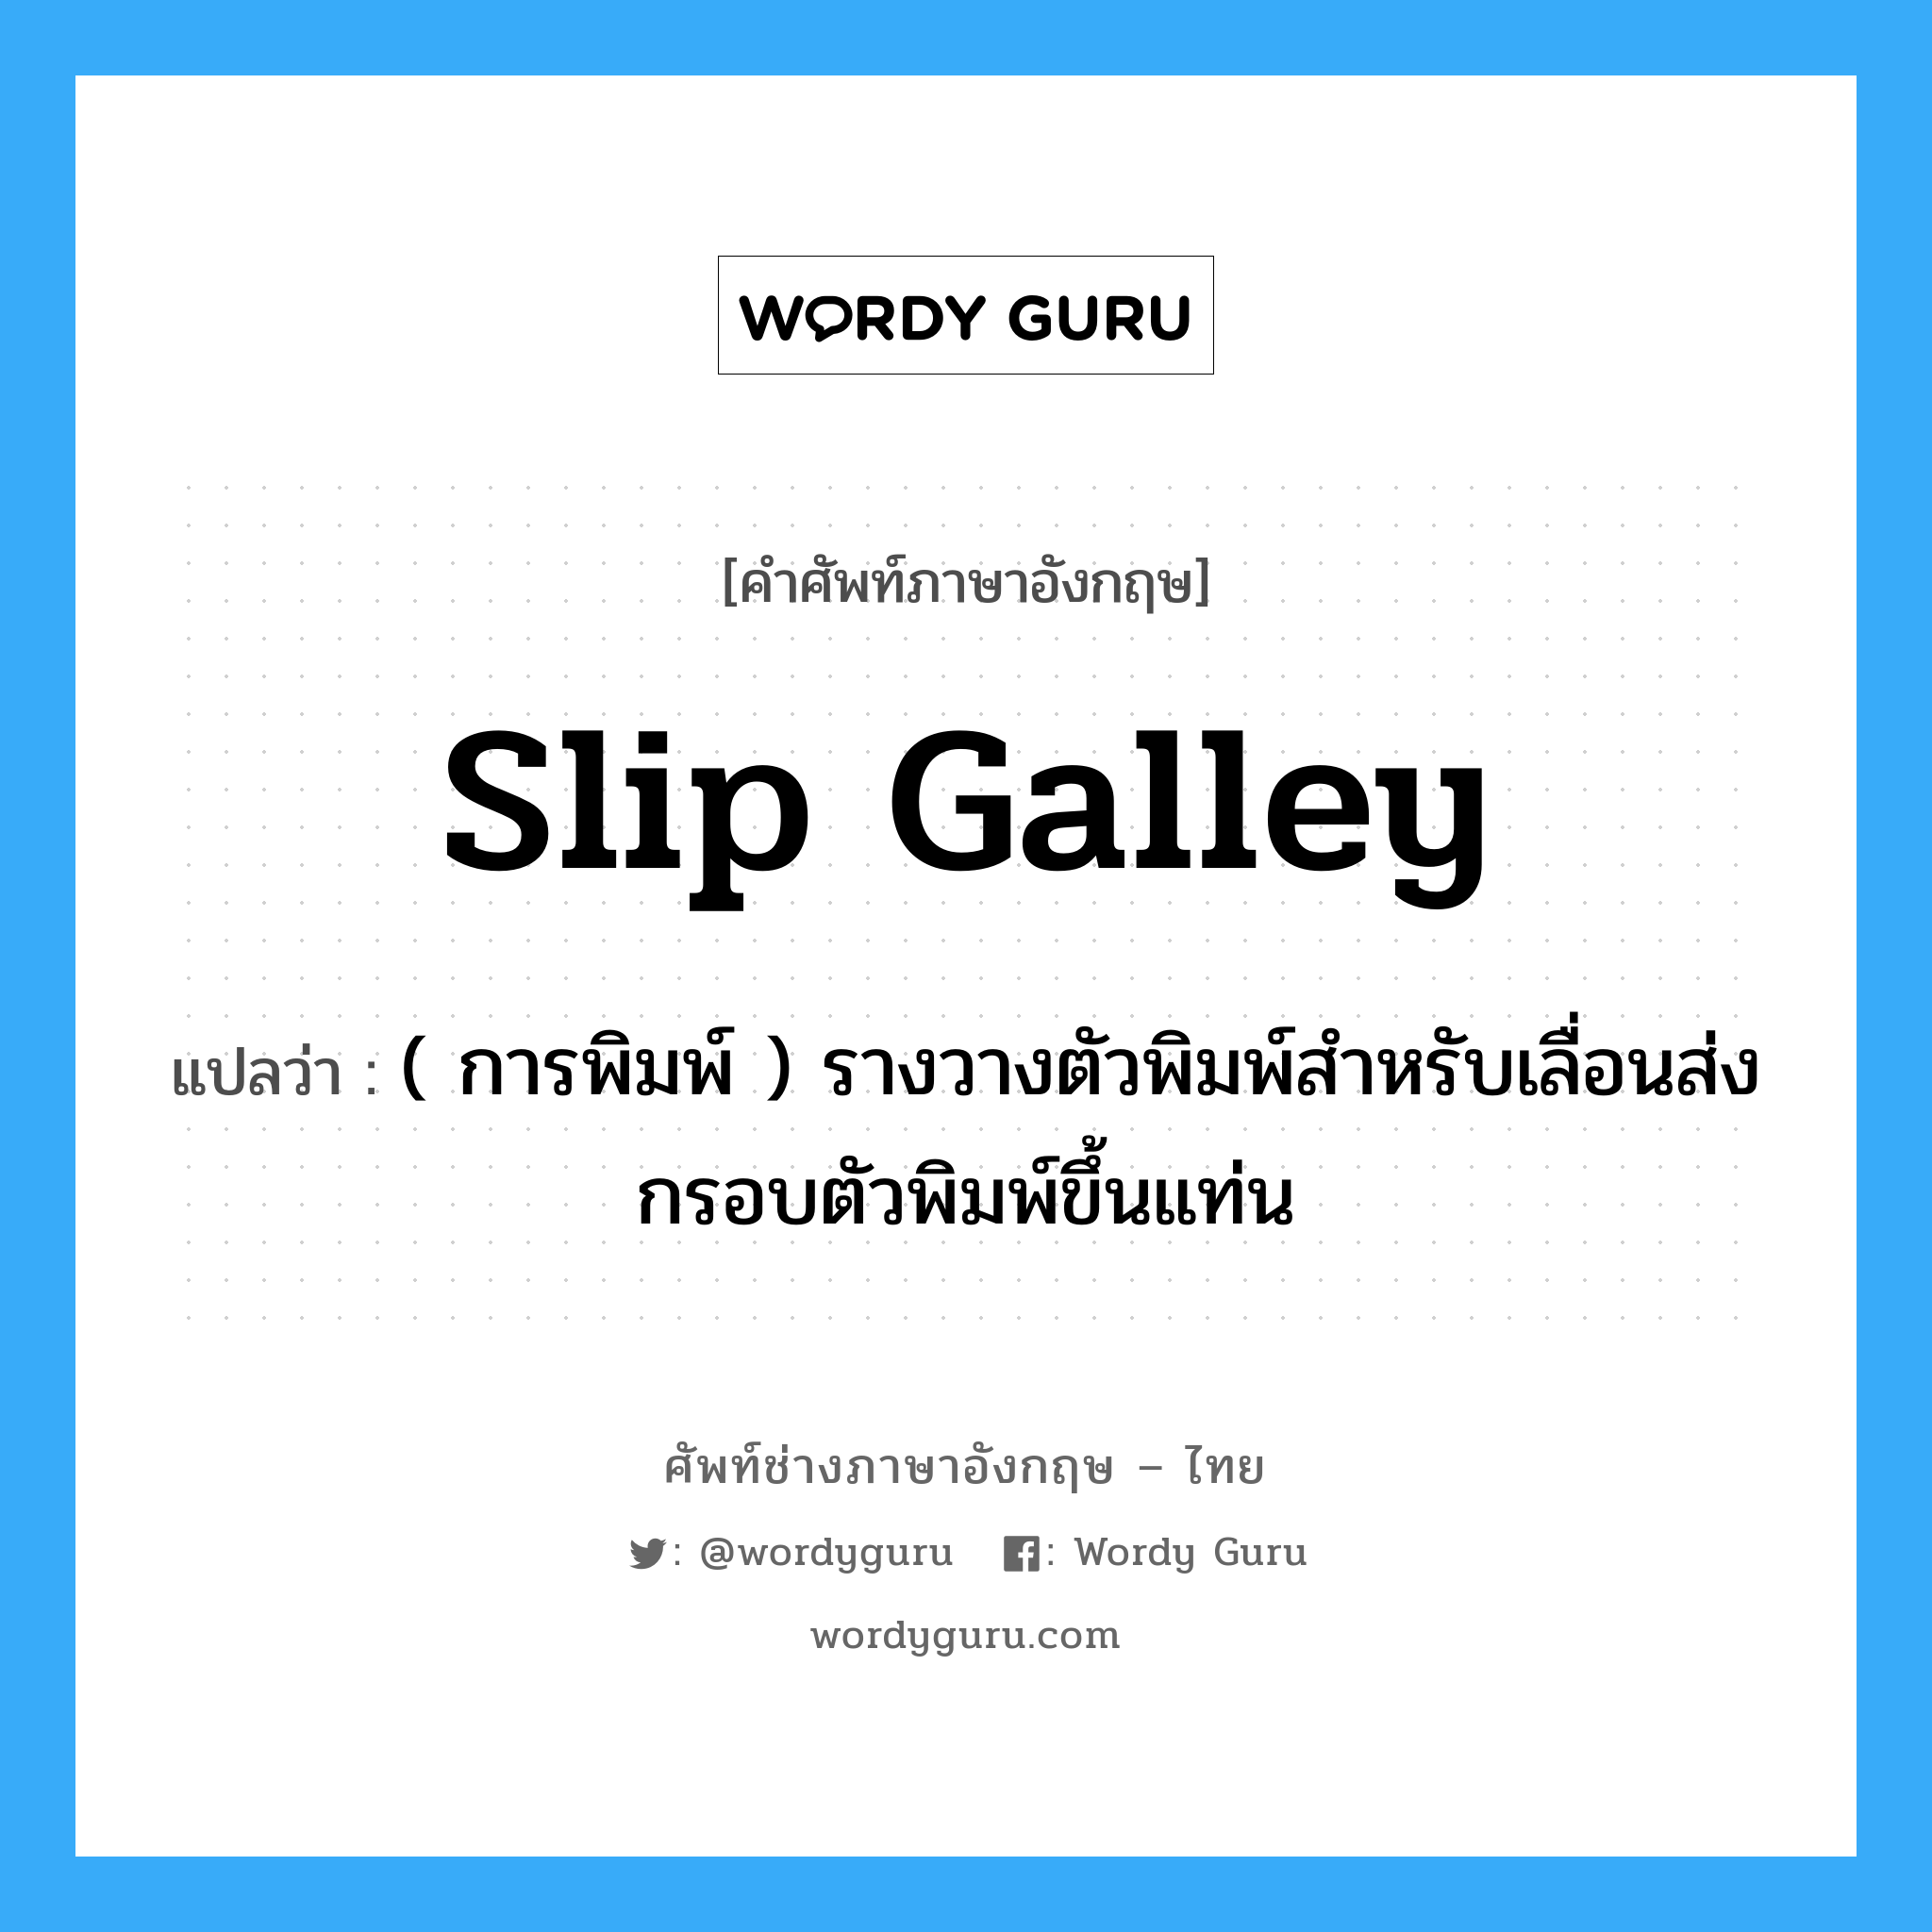 slip galley แปลว่า?, คำศัพท์ช่างภาษาอังกฤษ - ไทย slip galley คำศัพท์ภาษาอังกฤษ slip galley แปลว่า ( การพิมพ์ ) รางวางตัวพิมพ์สำหรับเลื่อนส่งกรอบตัวพิมพ์ขึ้นแท่น